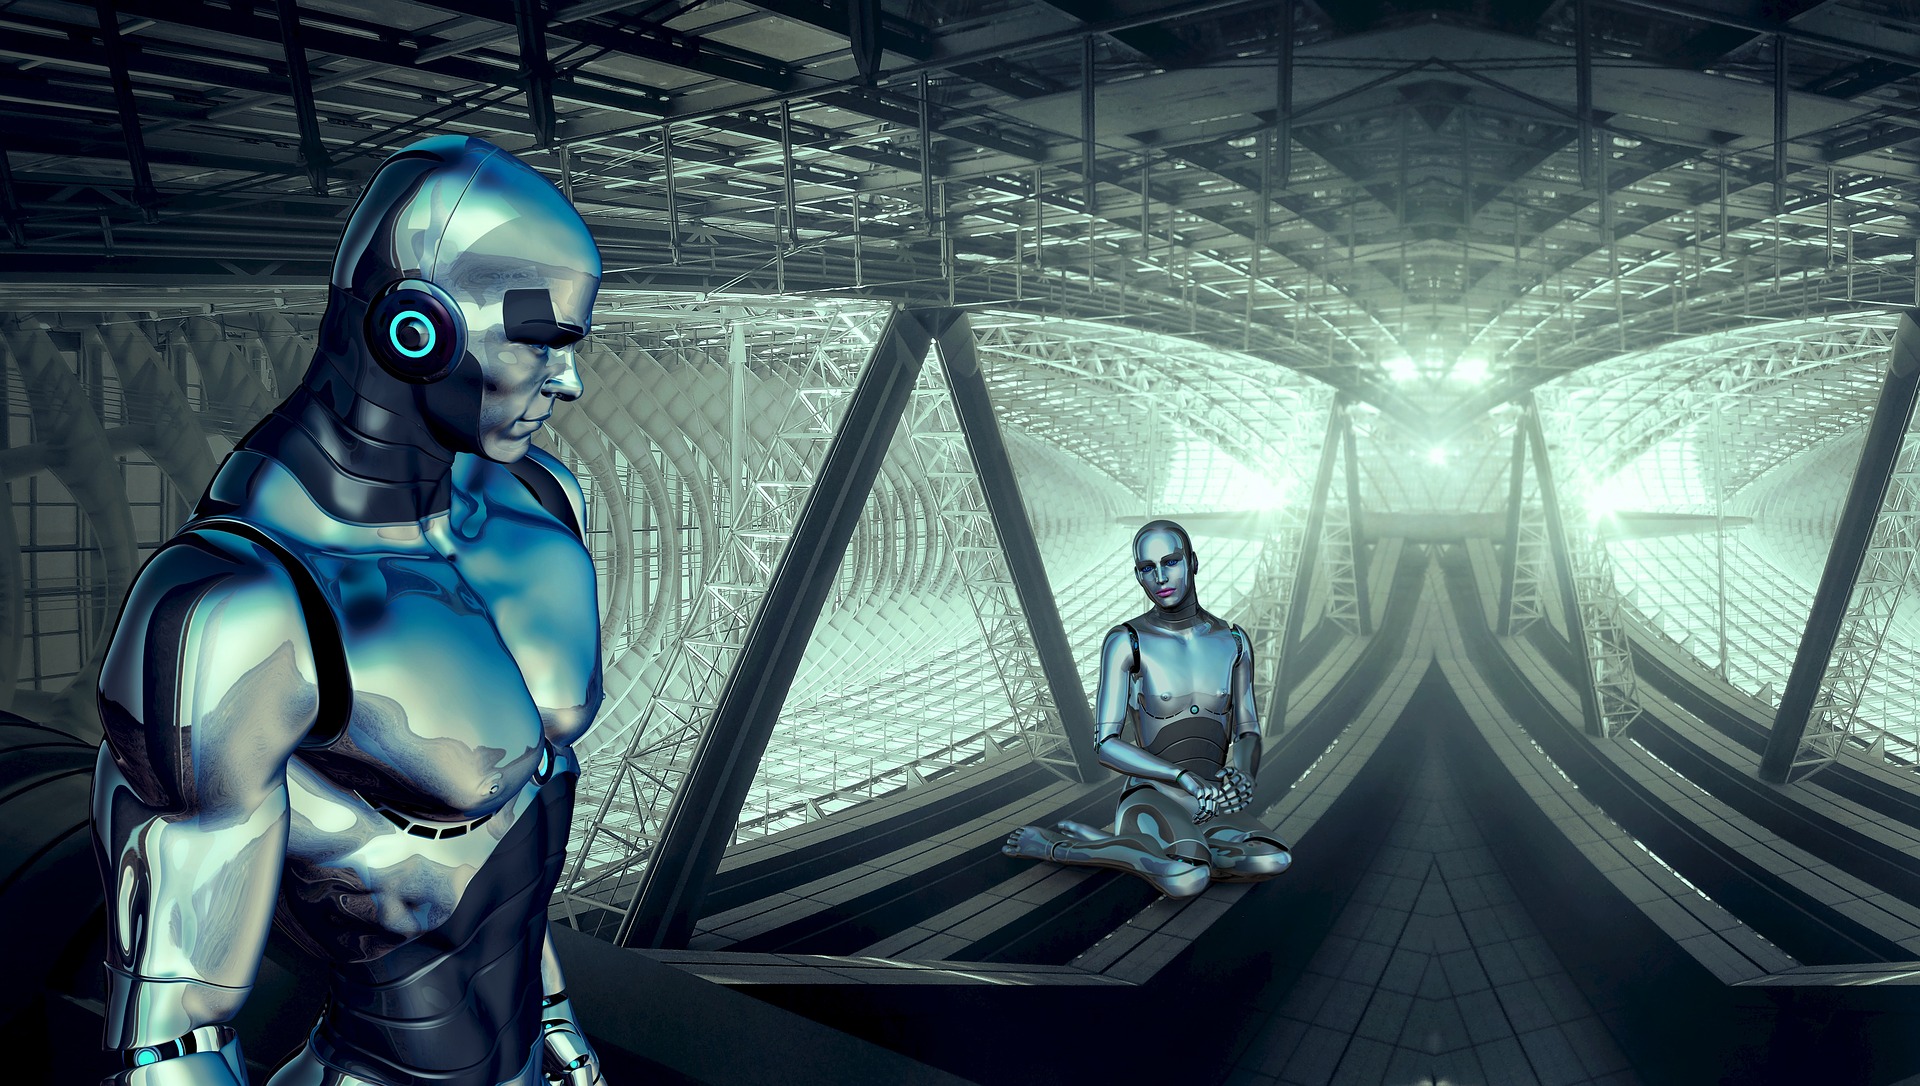 Androids: Alien space robots, science fiction